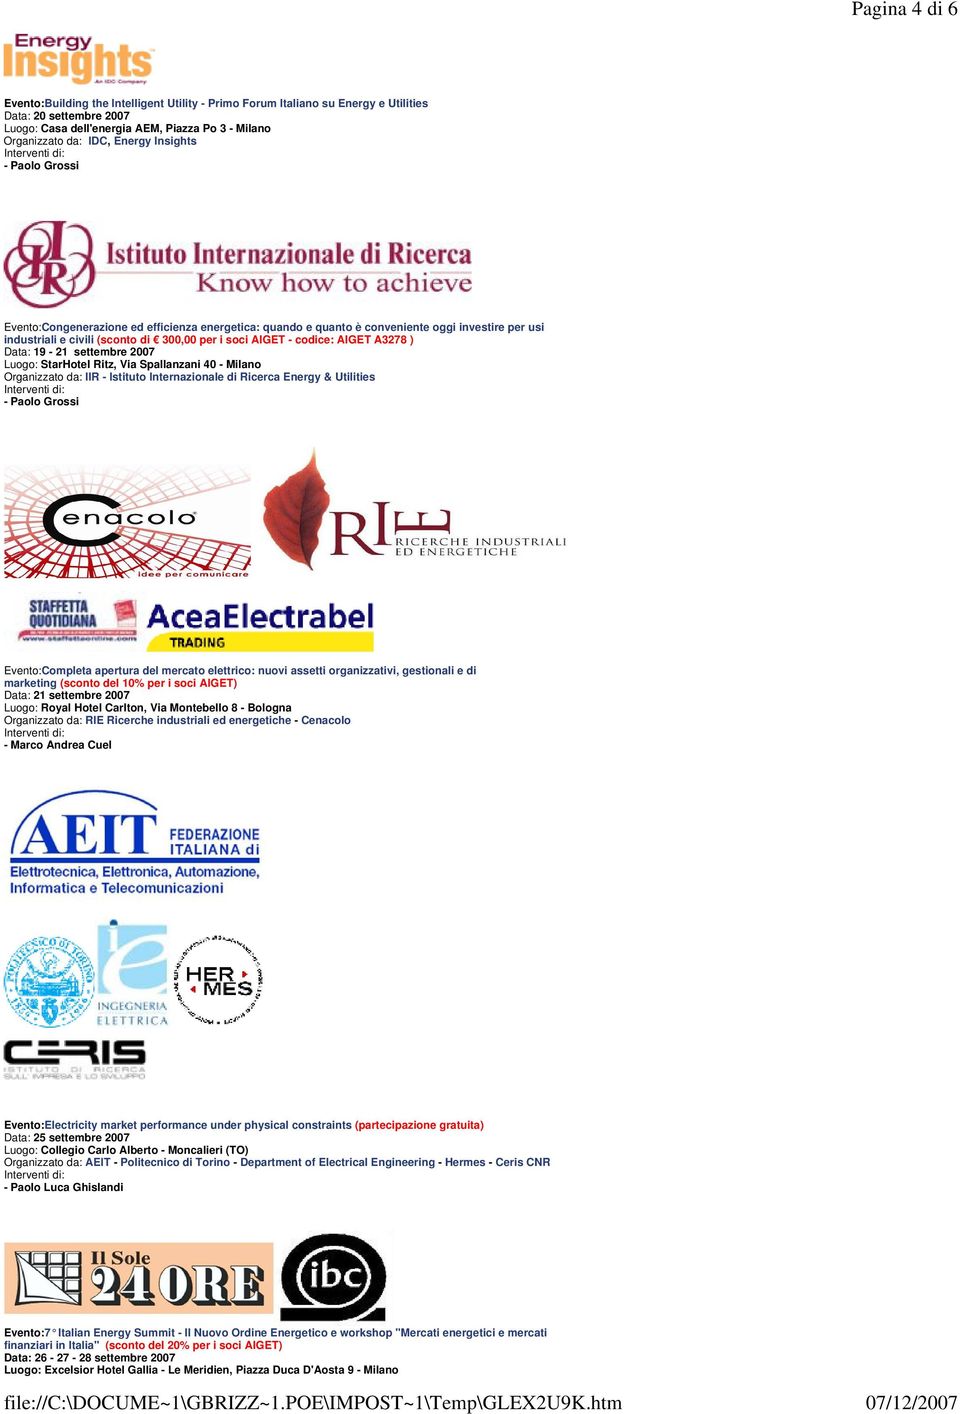 Data: 19-21 settembre 2007 Luogo: StarHotel Ritz, Via Spallanzani 40 - Milano Evento:Completa apertura del mercato elettrico: nuovi assetti organizzativi, gestionali e di marketing (sconto del 10%